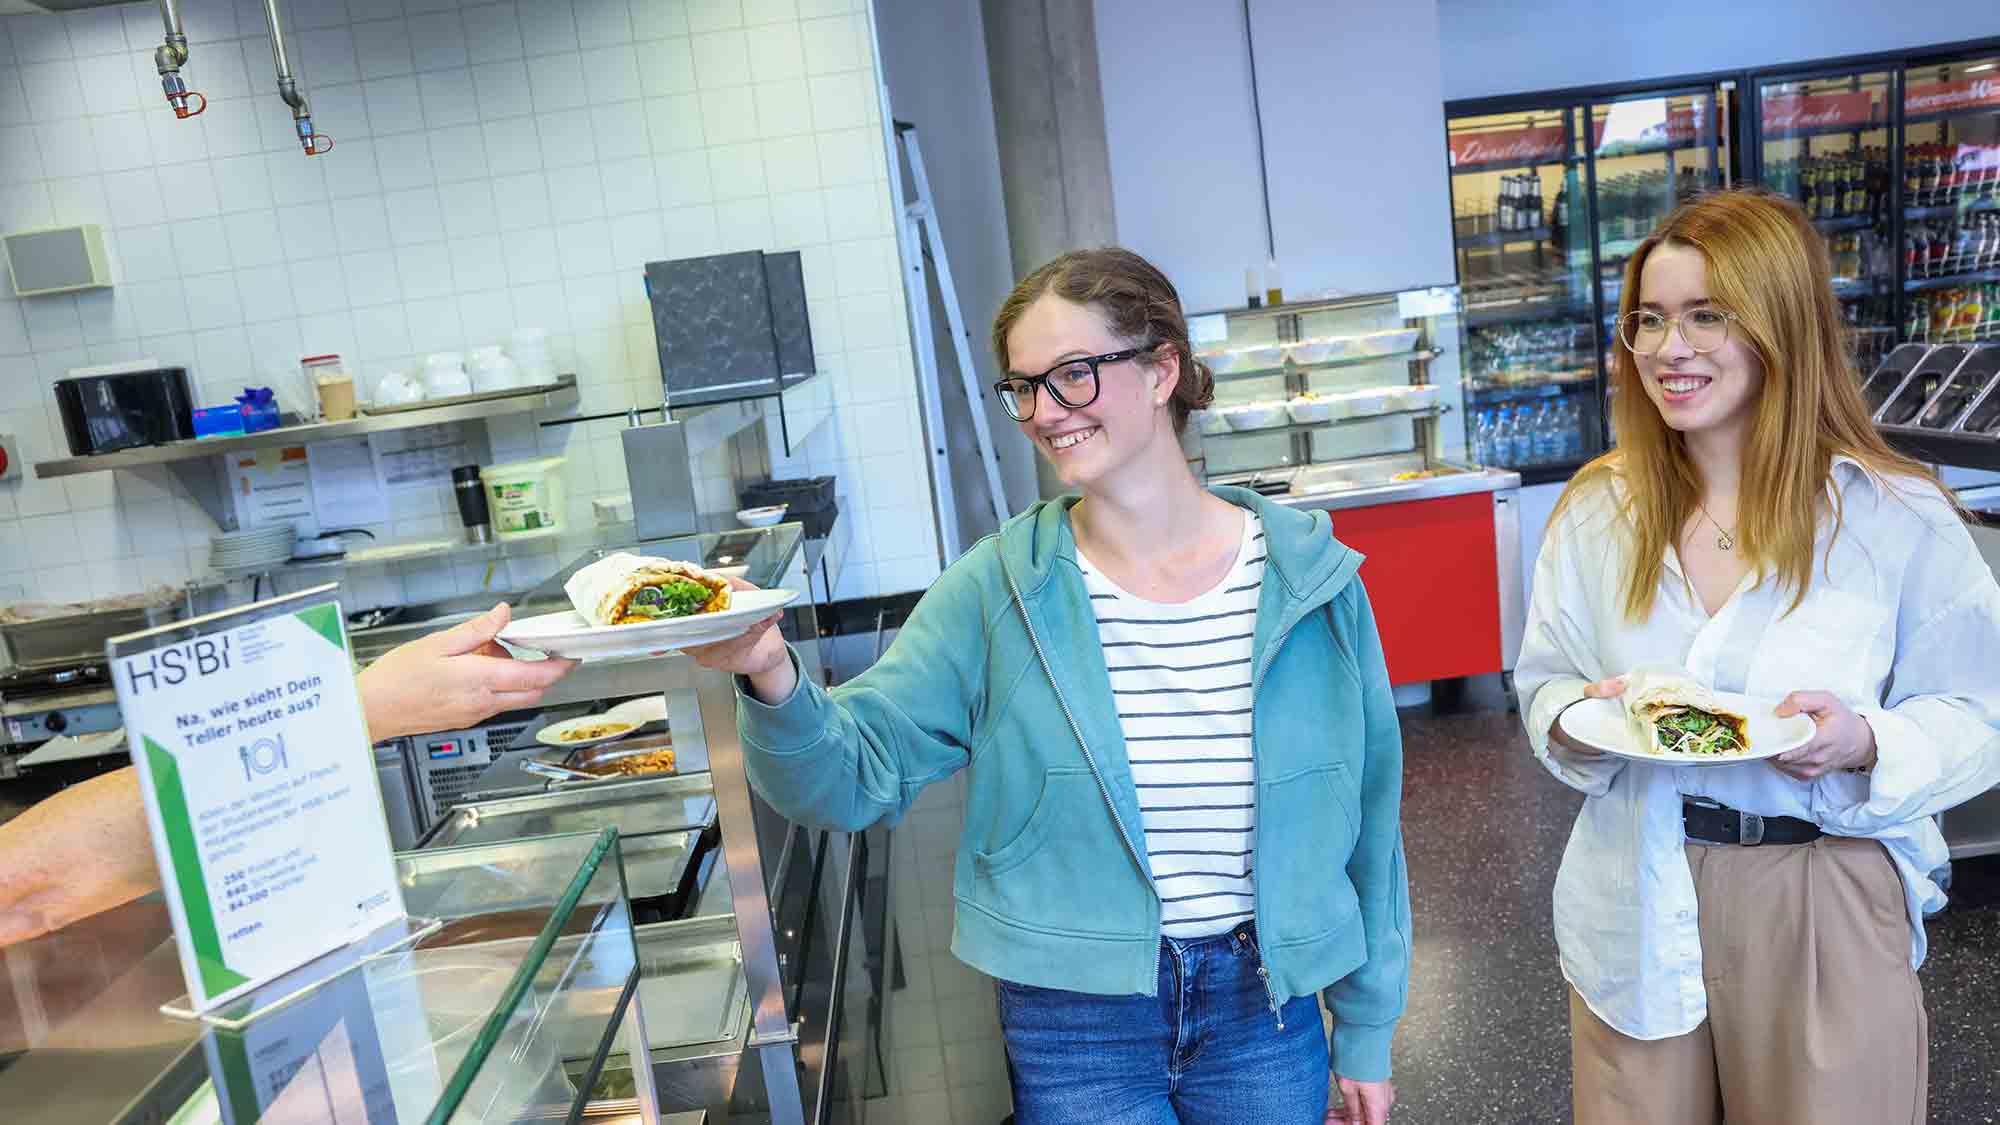 Vegetarisch oder mit Fleisch? Wirtschaftspsychologiestudenten untersuchten, wie sich das Konsumverhalten in der Cafeteria der HSBI beeinflussen lässt